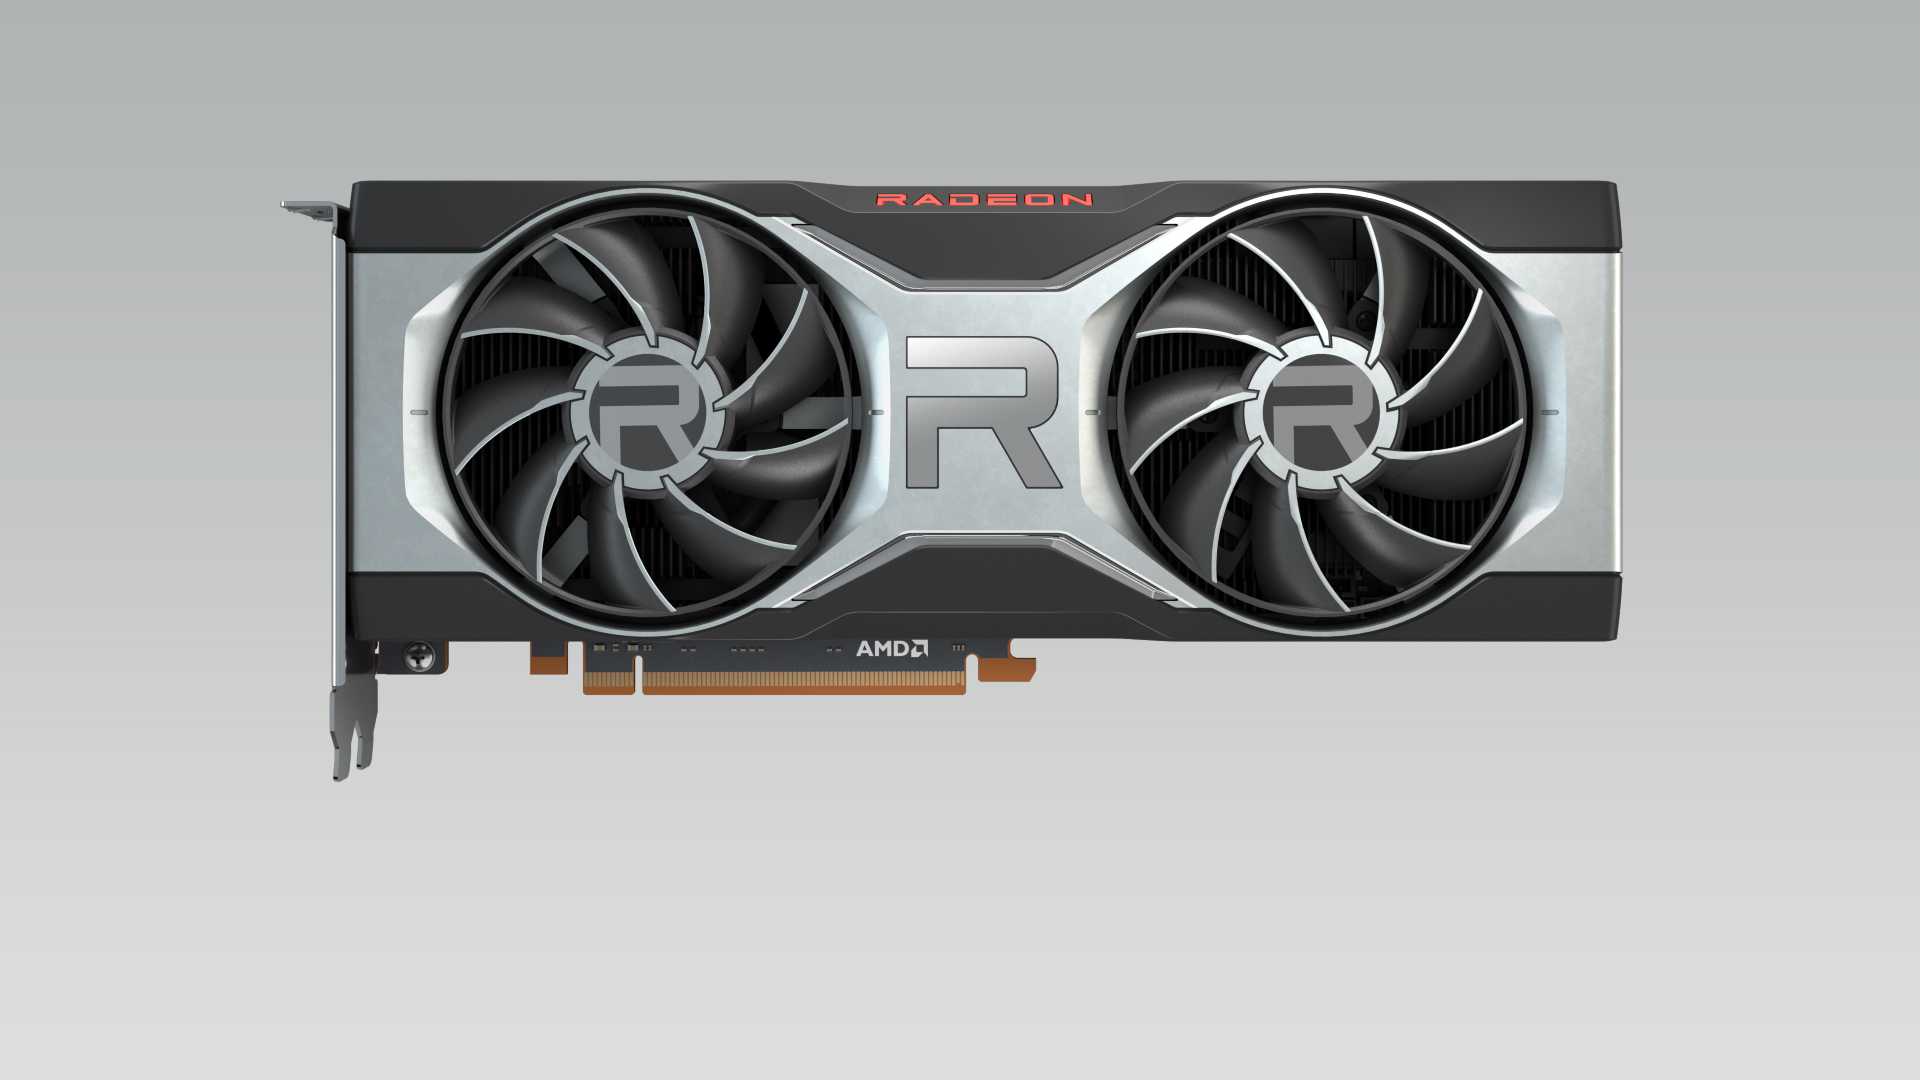 เปิดตัวกราฟิกการ์ดใหม่ AMD Radeon RX 6700 XT มอบประสบการณ์การเล่นเกมในความละเอียดระดับ 1440p